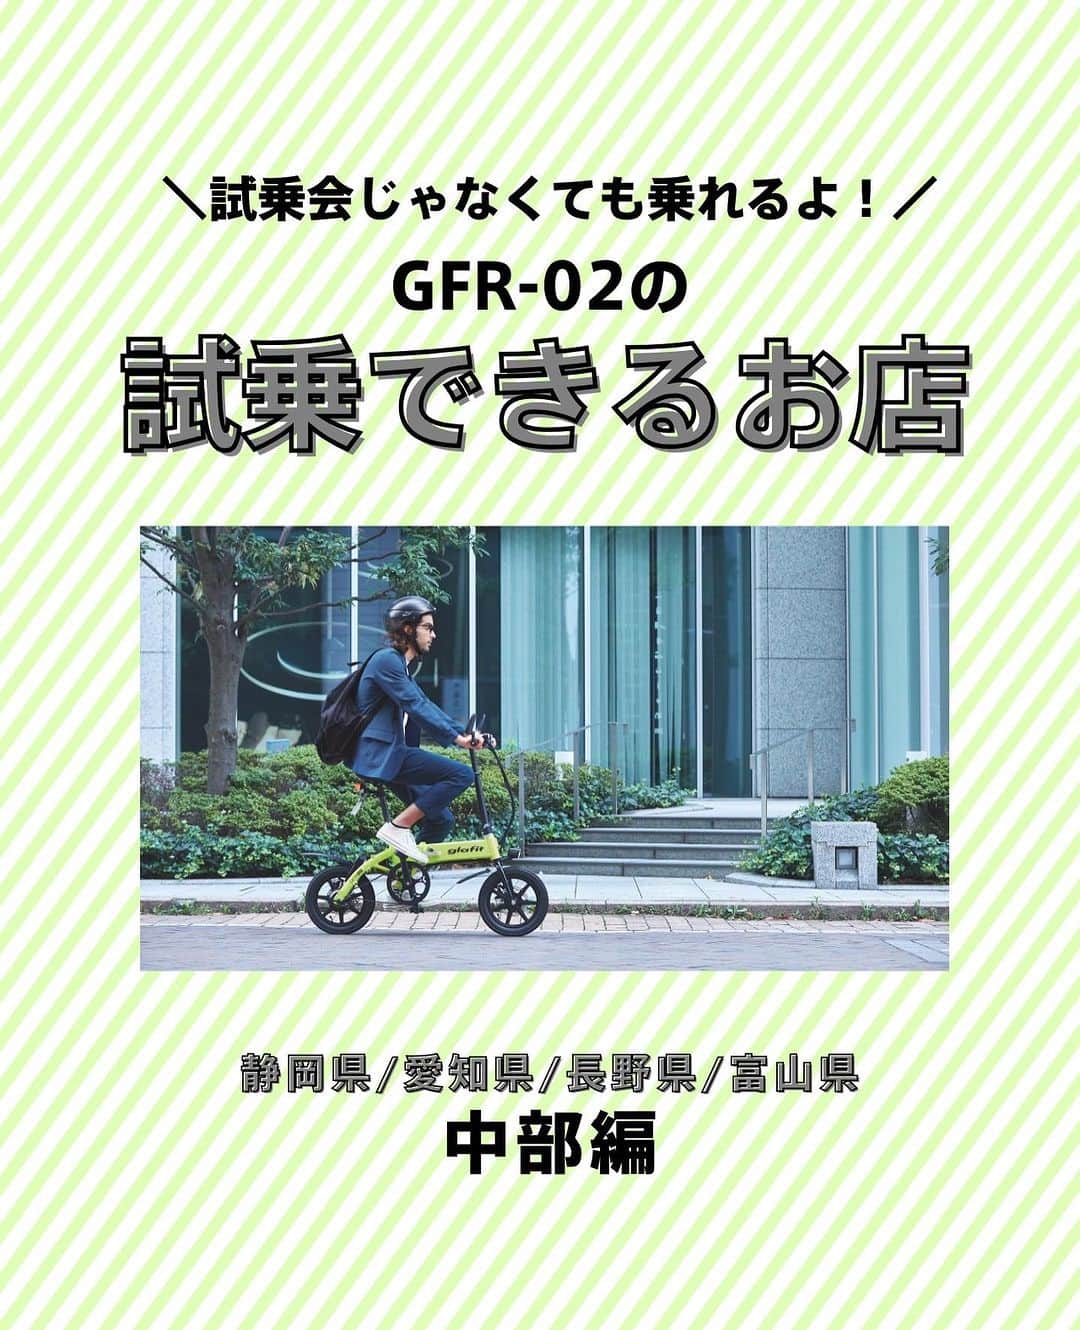 glafitのインスタグラム：「→ 試乗会じゃなくても電動バイクに乗れるよ！  ＼試乗OKの取扱店教えます！／  ✨電動バイクと自転車の二刀流 GFR-02に乗ってみたい！  ✨バイク初めてだけどちゃんと乗りこなせるかな・・？  そんな方は ぜひお近くの「試乗OK」のお店へGO!  GFR-02のお取扱店の中でも 試乗予約を日々受け付けている お店があります👌  本日は中部編！ 静岡県、愛知県、富山県、長野県の 試乗OKのお店をご紹介💫  まずは乗ってみて、 その爽快な走りを体験してくださいね！  ＝＝＝＝＝＝  #GFR-02 って  💫どこで買えるの？ 💫どういう乗り物なの？ 💫免許は必要？  などなど、 他の投稿でもご紹介しています！  ————————————  #glafit 株式会社  ◆Makuakeで1.3億円達成し、当時の日本最高記録を樹立！ #電動ハイブリッドバイク 「GFR-02」  ◆Makuakeで1.5億円達成！ 立ち乗り電動スクーター「LOM」  #移動をタノシメ！ をコンセプトに、 glafitが開発した #次世代モビリティー のご紹介や、 それにまつわる情報をお届けするアカウントです✌️  ————————————  #glafitバイク #電動バイク #電動自転車 #モビチェン  #eバイク #ebike  #折りたたみ自転車 #原付 #バイク #原付バイク  #自転車生活 #cyclingme #bicyclee #チャリダー #street #SDGs #バイク好きと繋がりたい #街乗り #アウトドア #バイクキャンプ #バイクのある生活 #バイク屋 #バイク試乗」